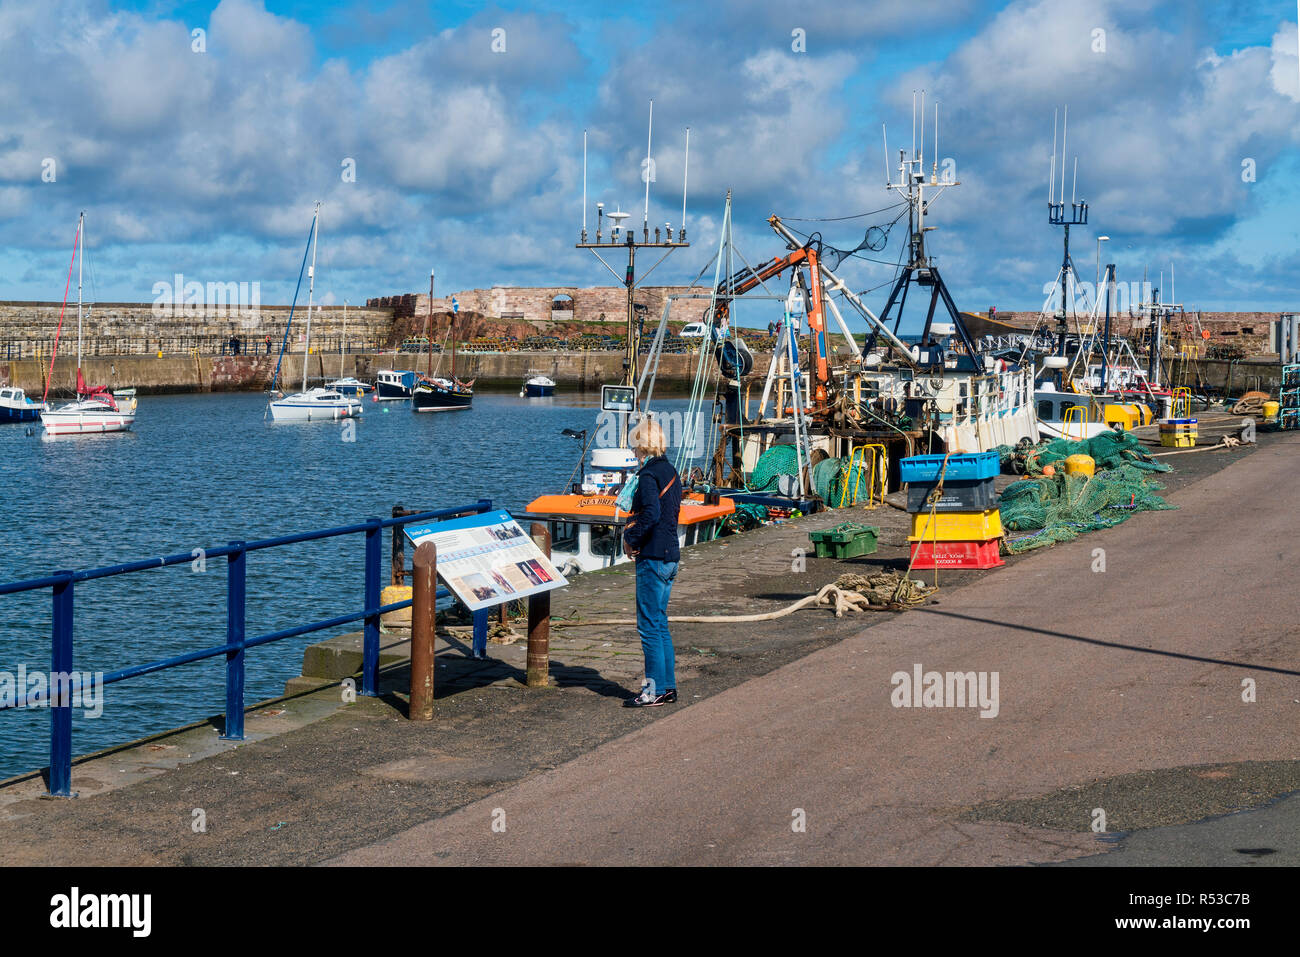 Dunbar harbor, barche, East Lothian, Scozia, Regno Unito. Foto Stock